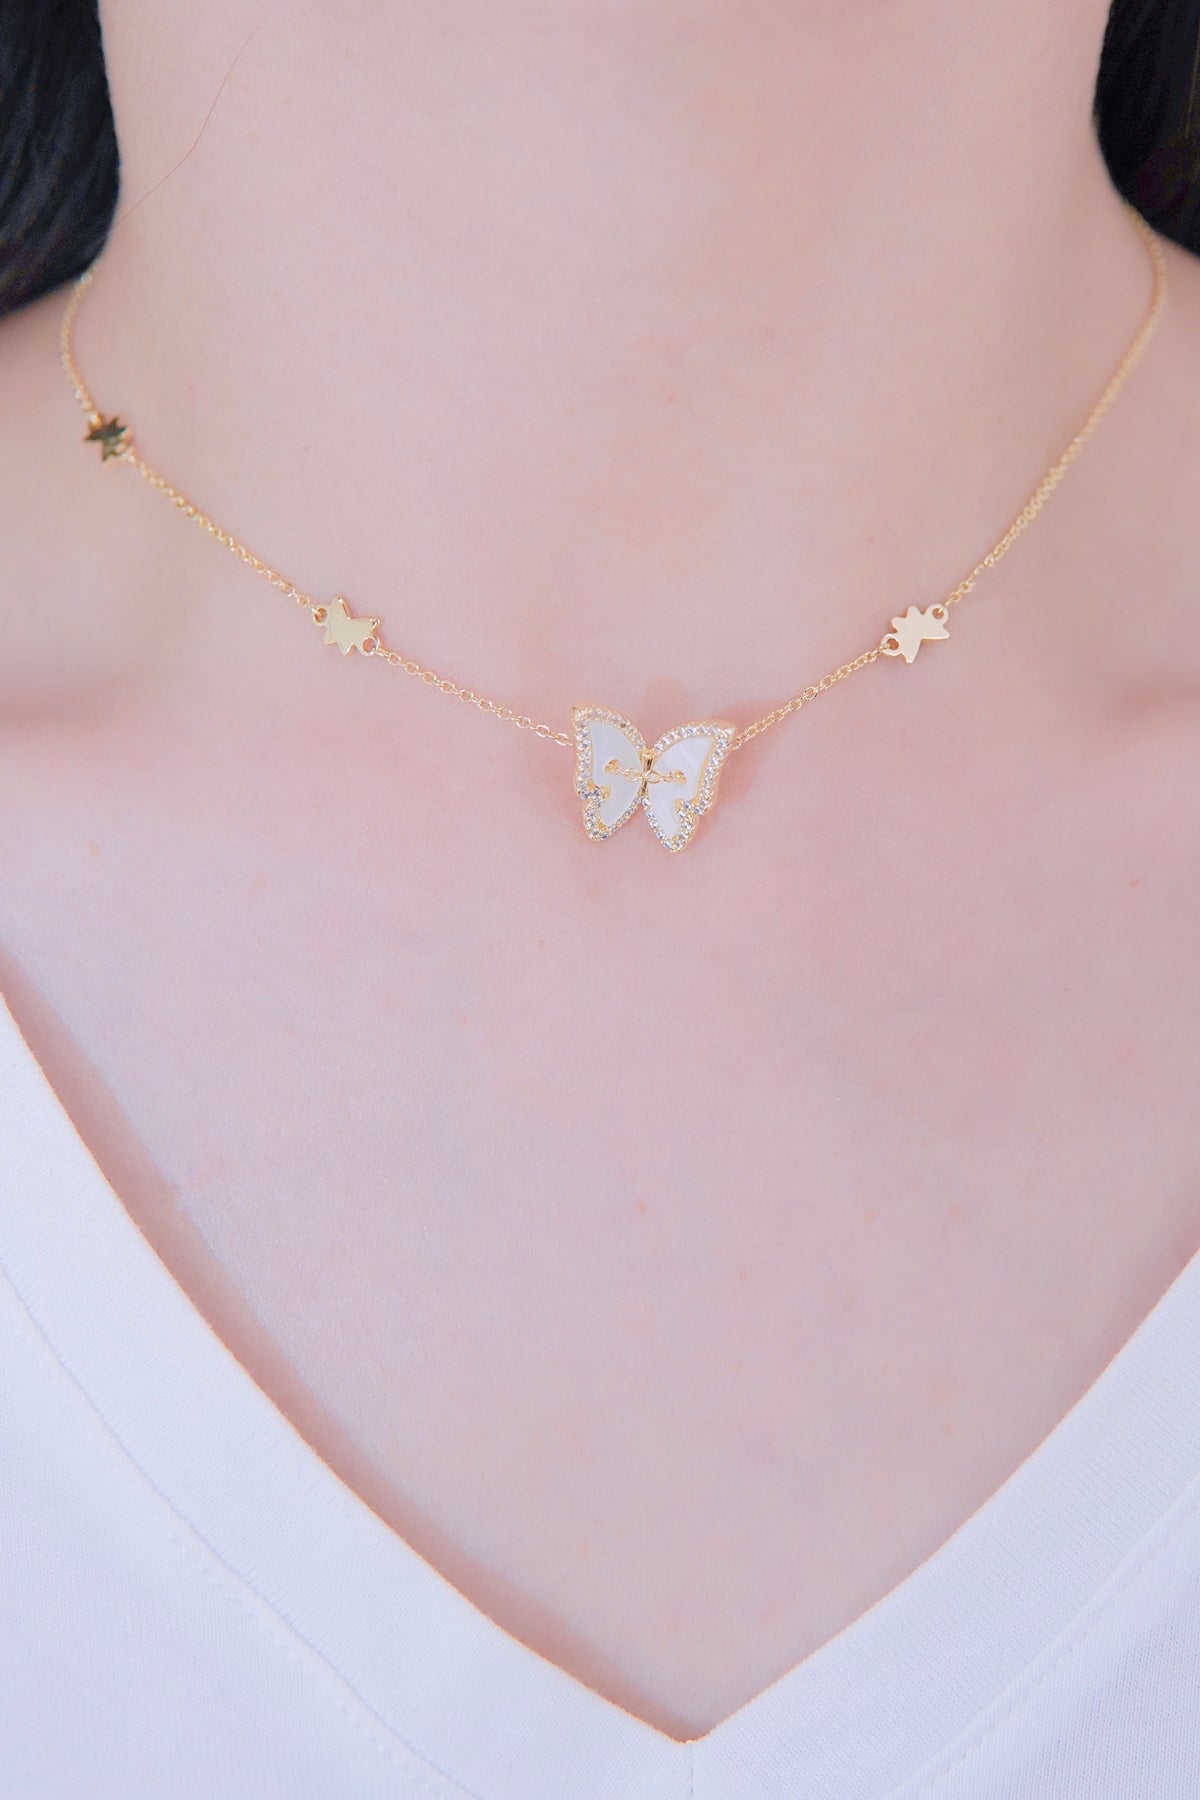 LAFIT · Dancing Butterflies - Necklace 法式貴氣蝴蝶頸鏈